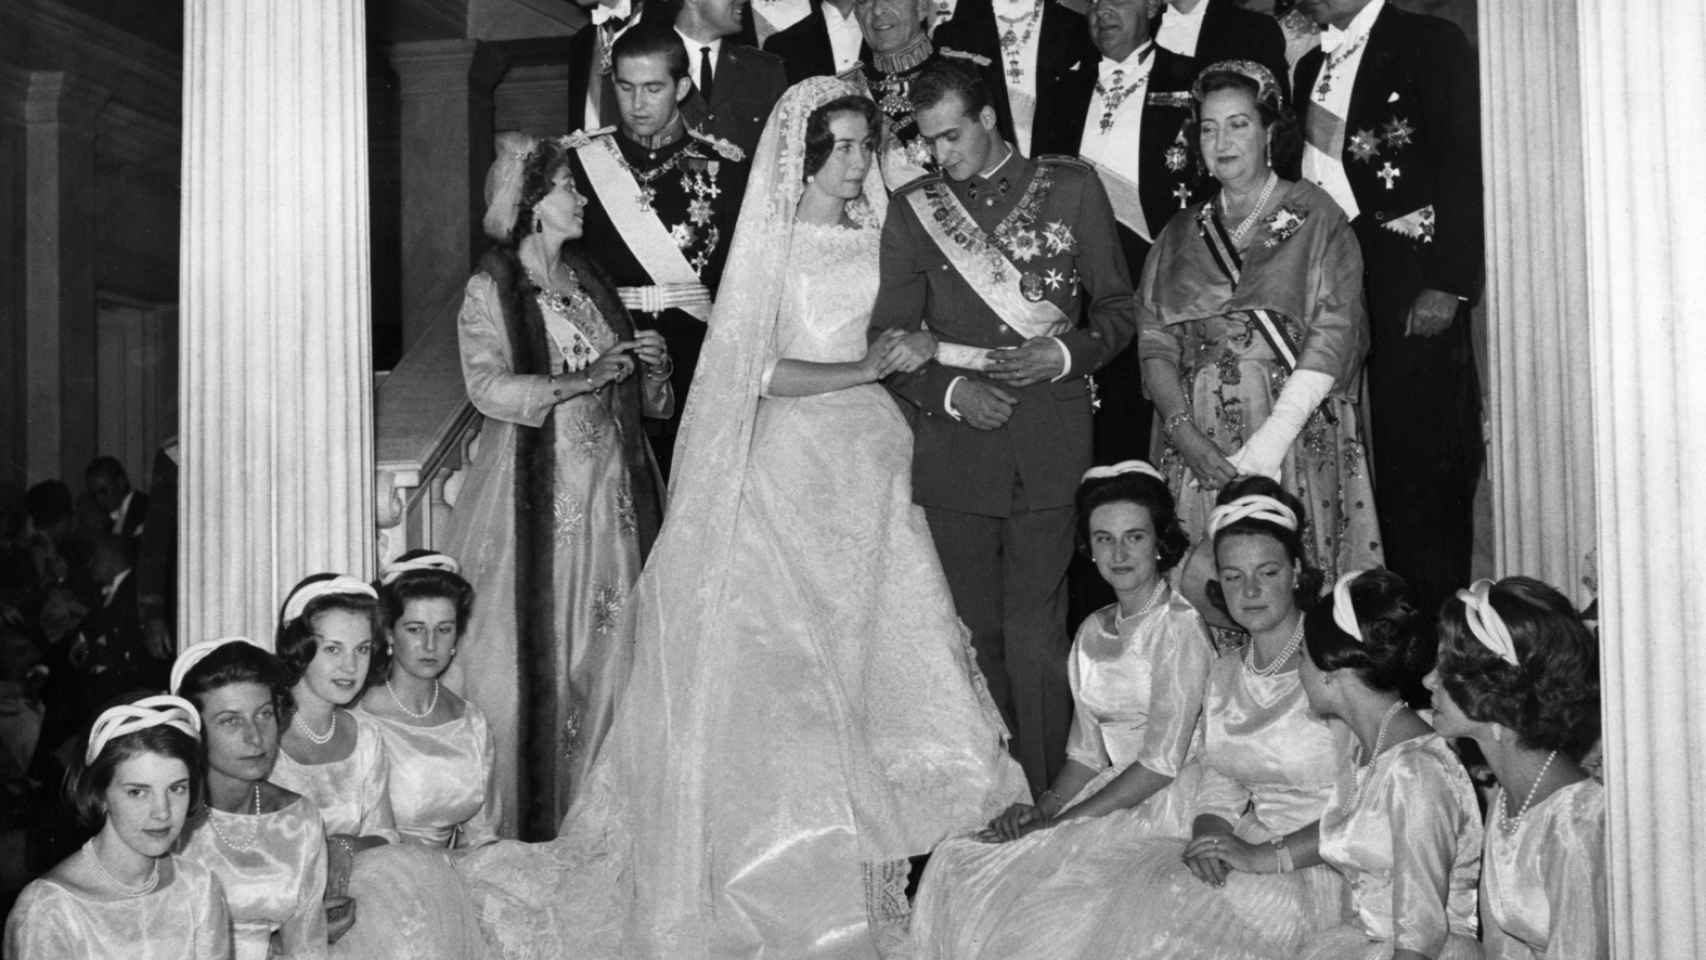 Juan Carlos y Sofía, el día de su boda, el 14 de mayo de 1962.